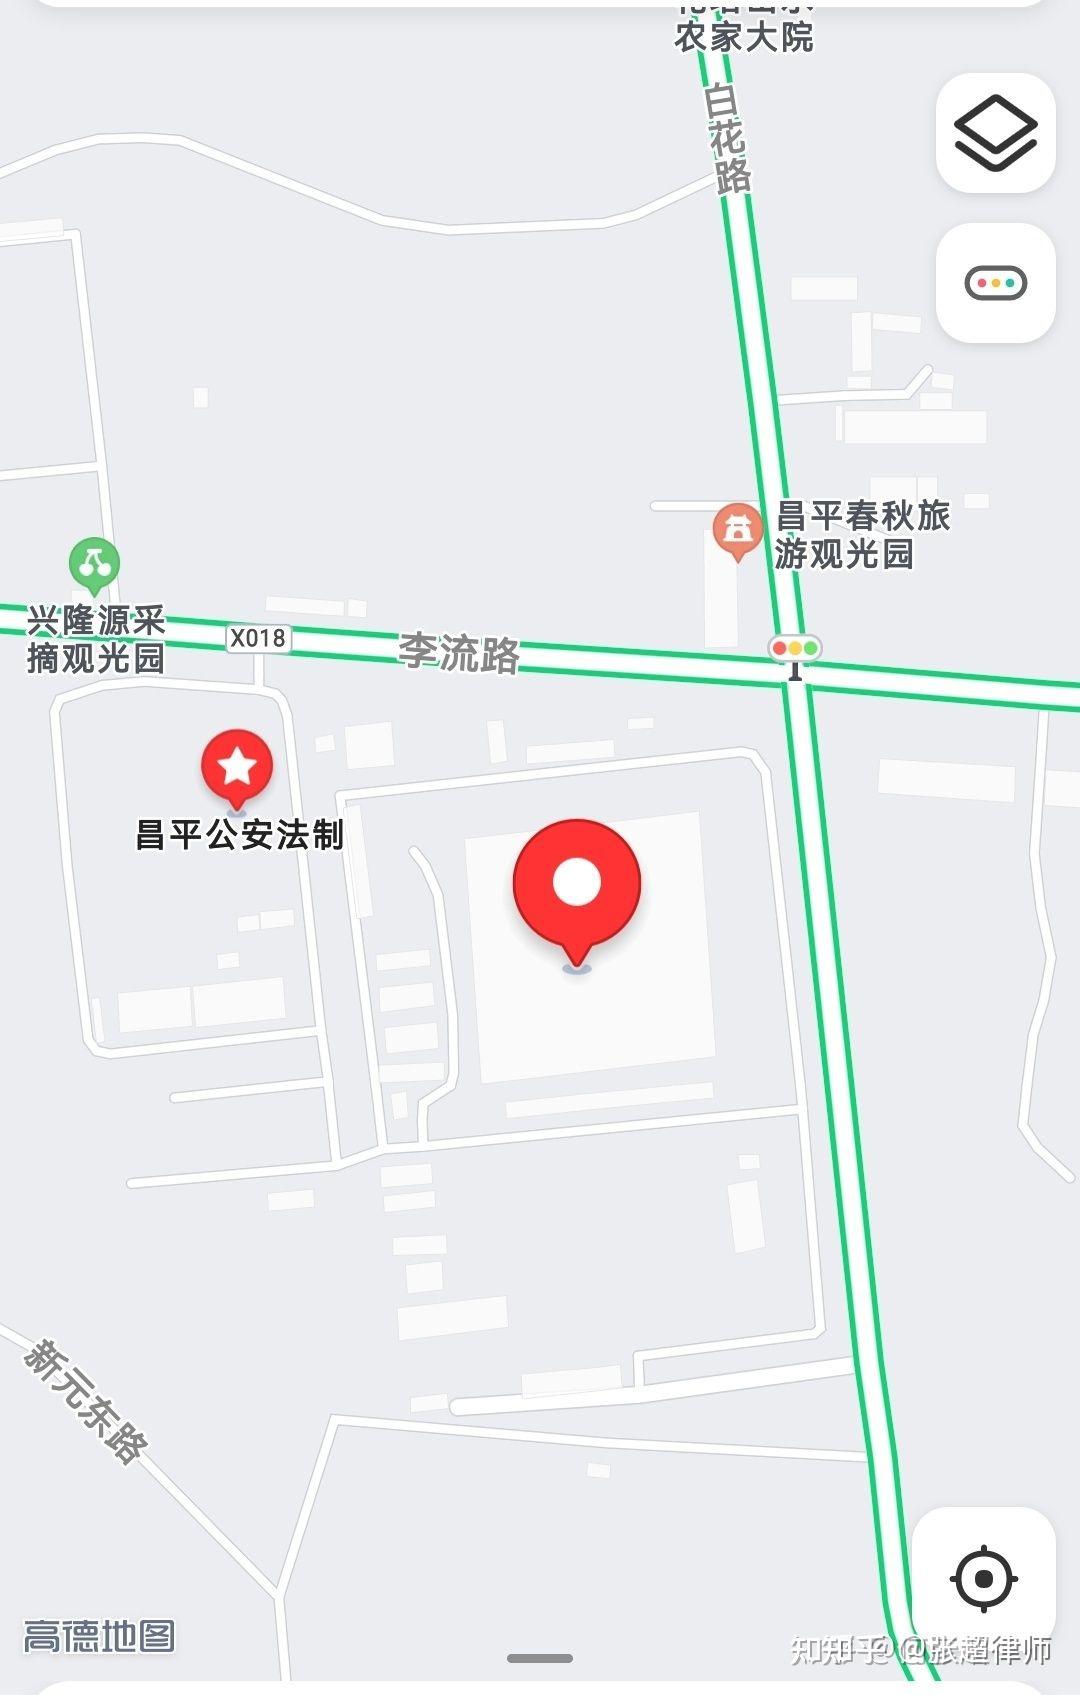 二,前往昌平看守所驾车,乘车路线昌平看守所作为北京市公安局昌平分局